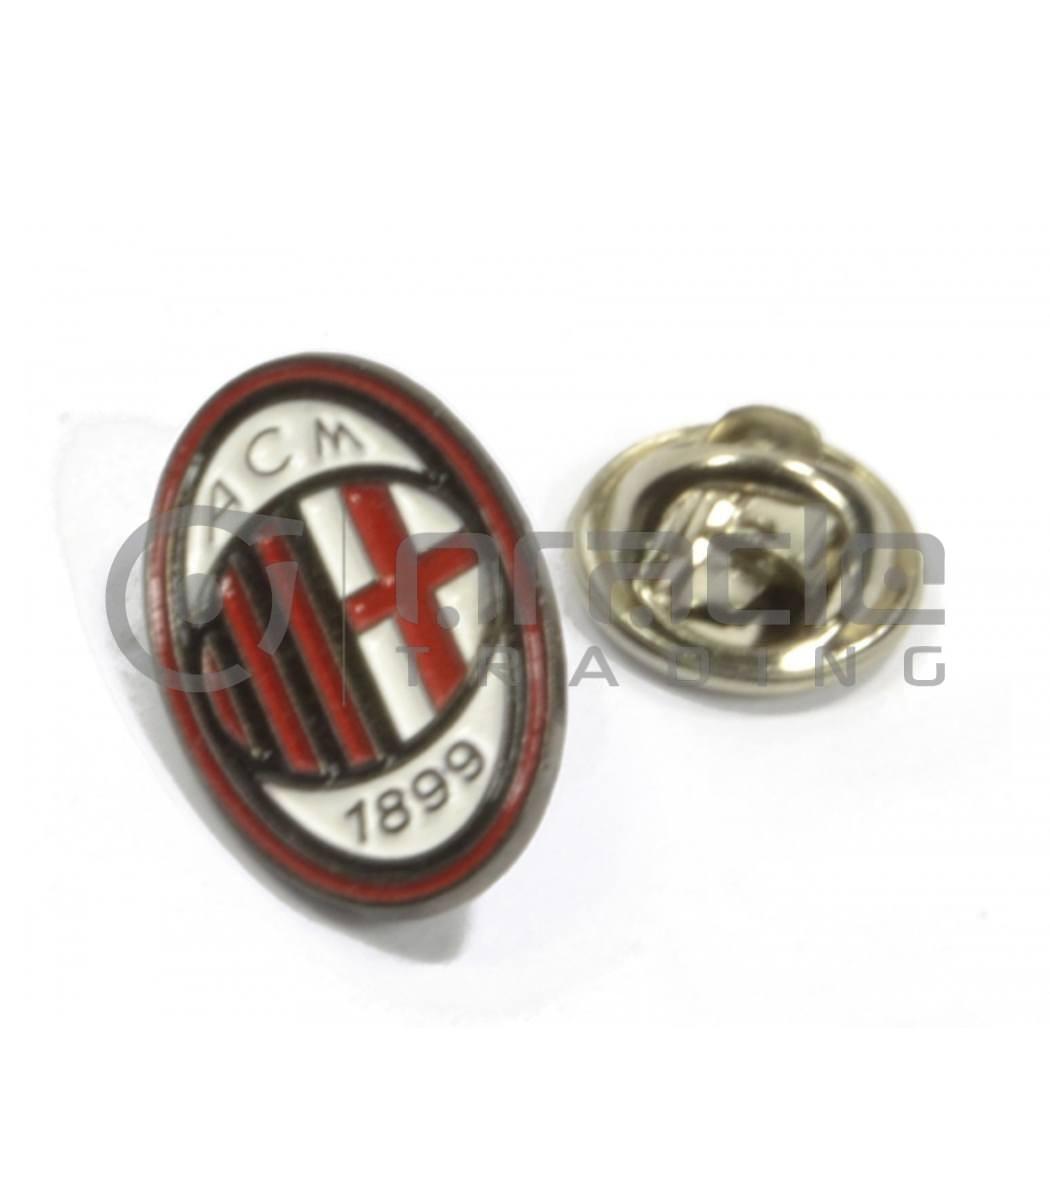 AC Milan Crest Pin Badges 